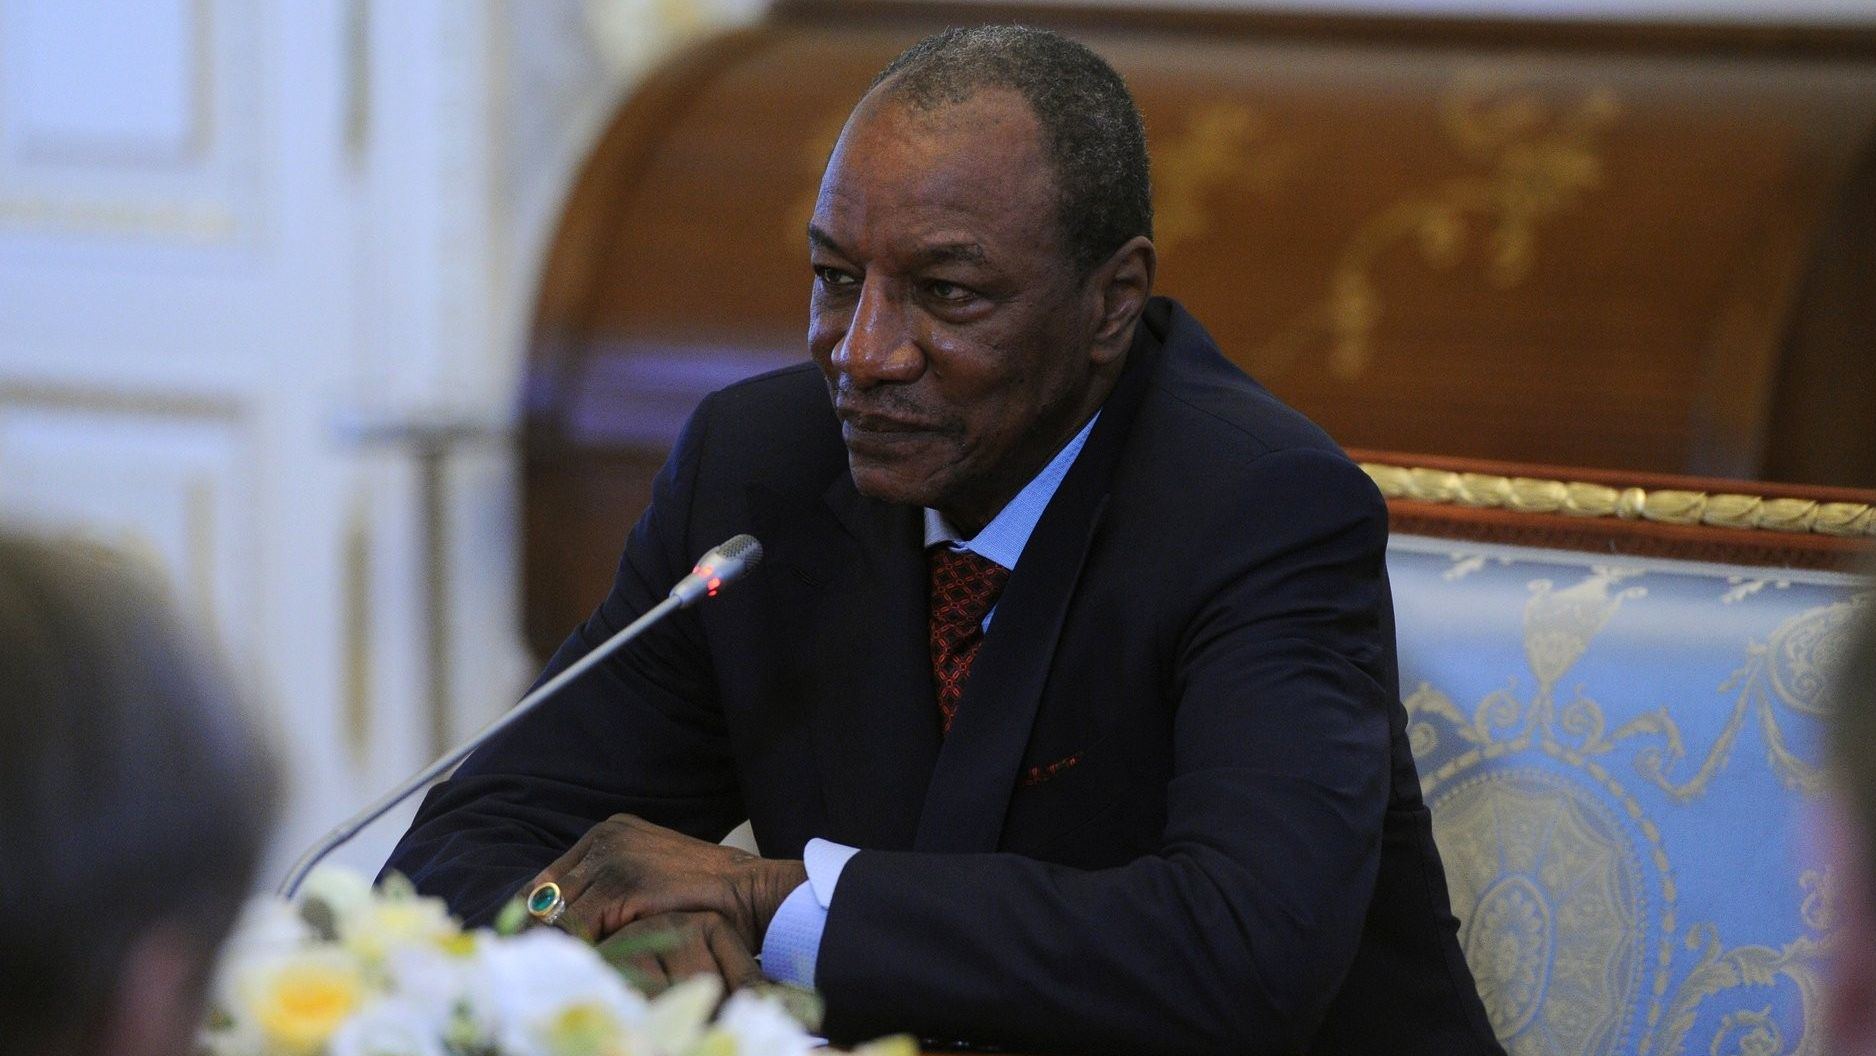 Действующий президент Гвинеи будет баллотироваться на третий срок